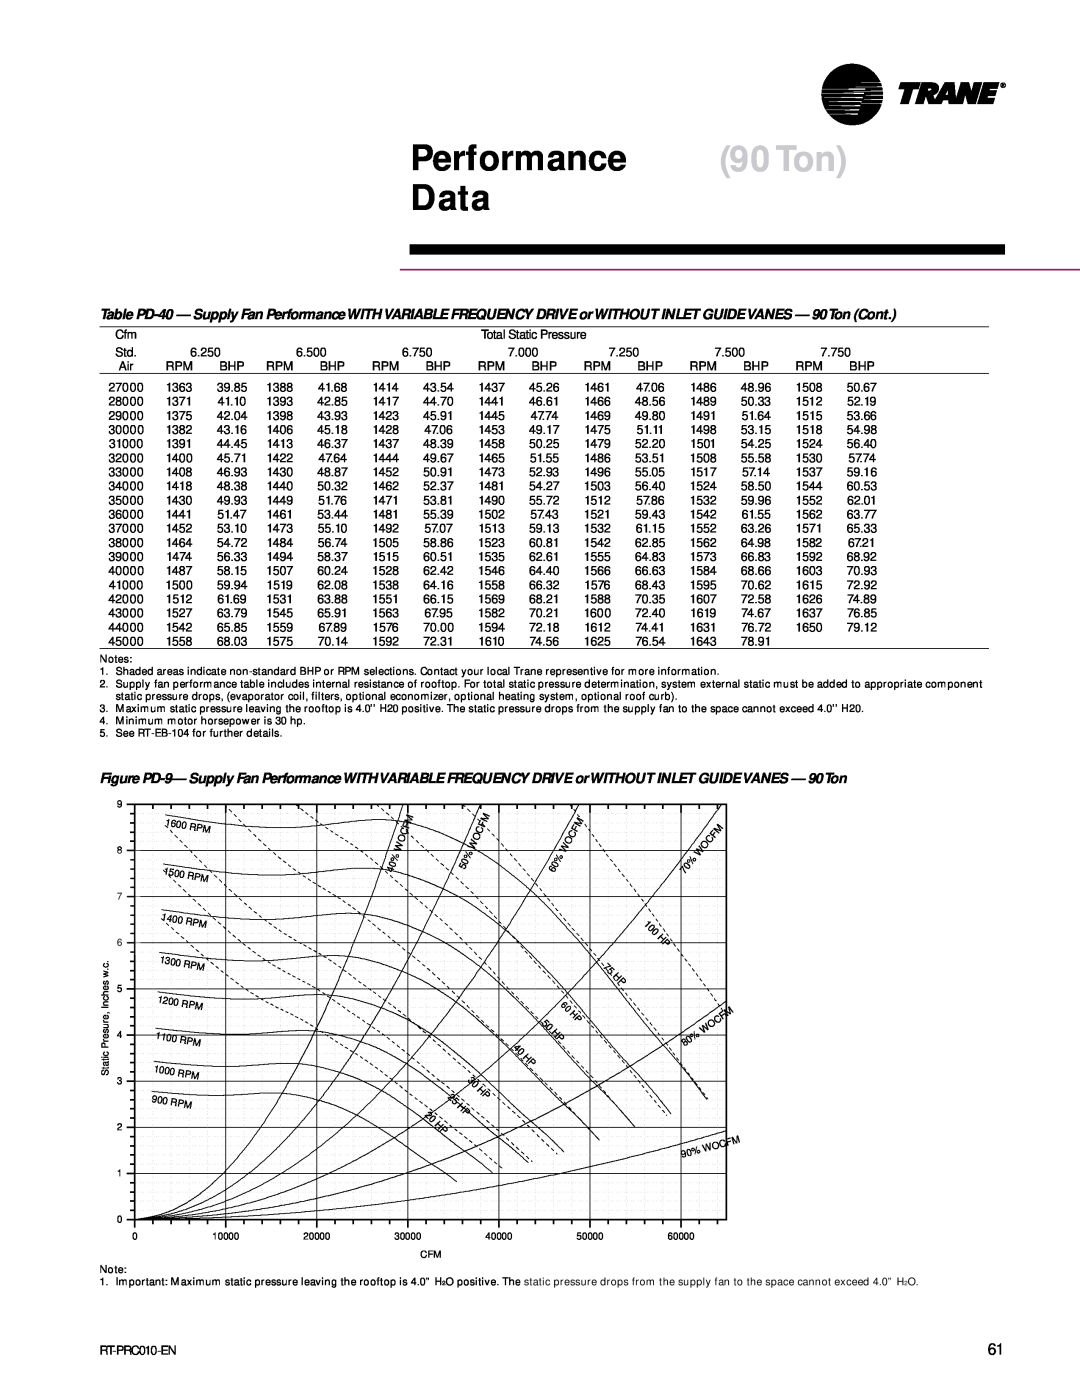 Trane RT-PRC010-EN manual Performance 90Ton Data 